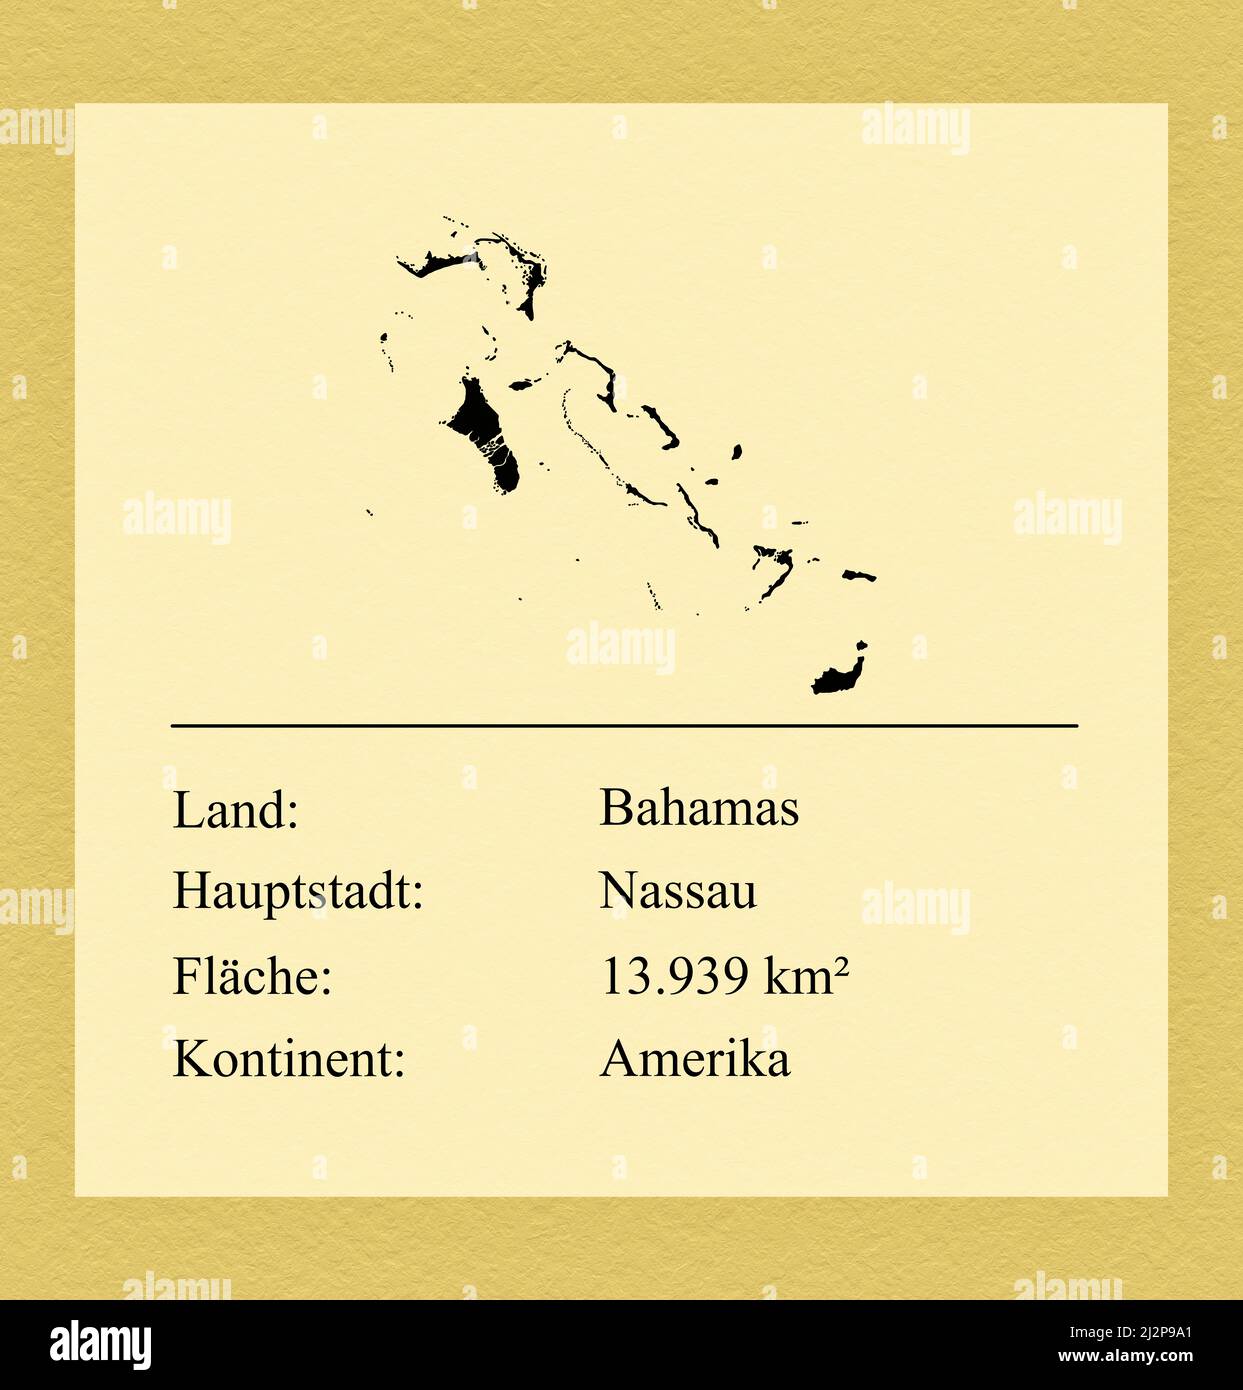 Umrisse des Landes Bahamas, darunter ein kleiner Steckbrief mit Ländernamen, Hauptstadt, Fläche und Kontinent Foto de stock